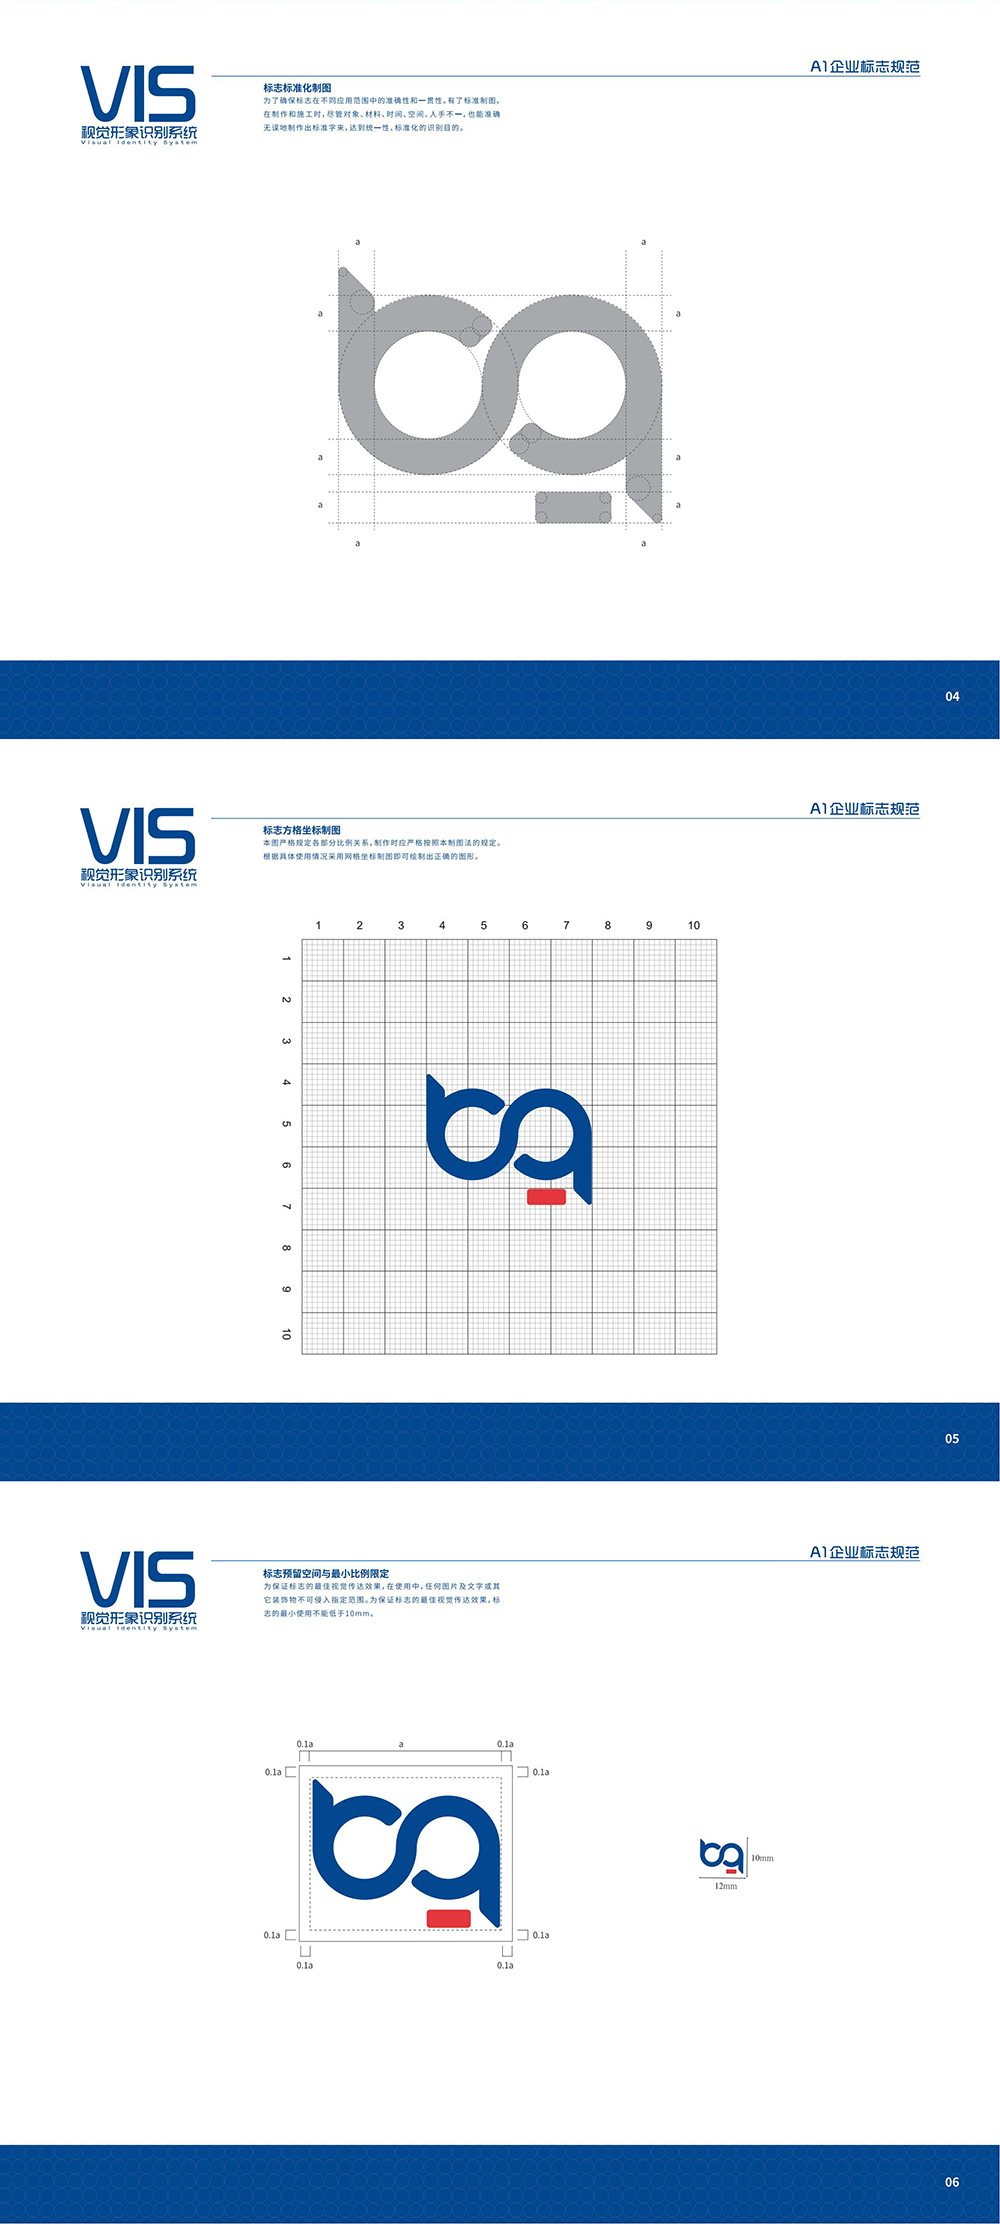 VIS视觉形象系统_00_03.jpg